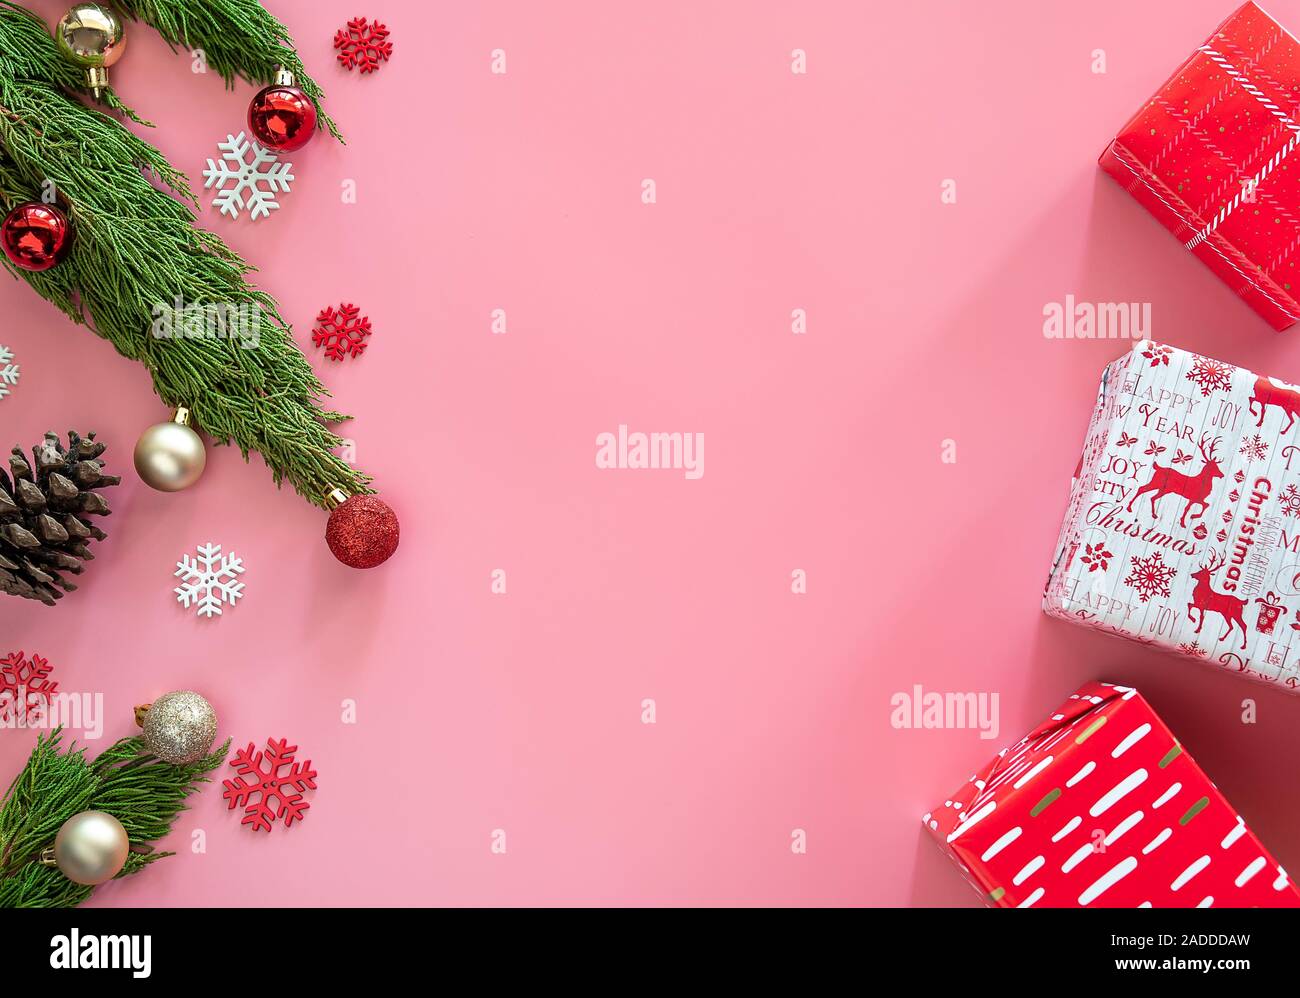 Green Pine, Pine Cone, Schneeflocken, Weihnachtsschmuck und Geschenkverpackung Geschenkpapier in Rot auf rosa Hintergrund mit Kopie Raum Stockfoto